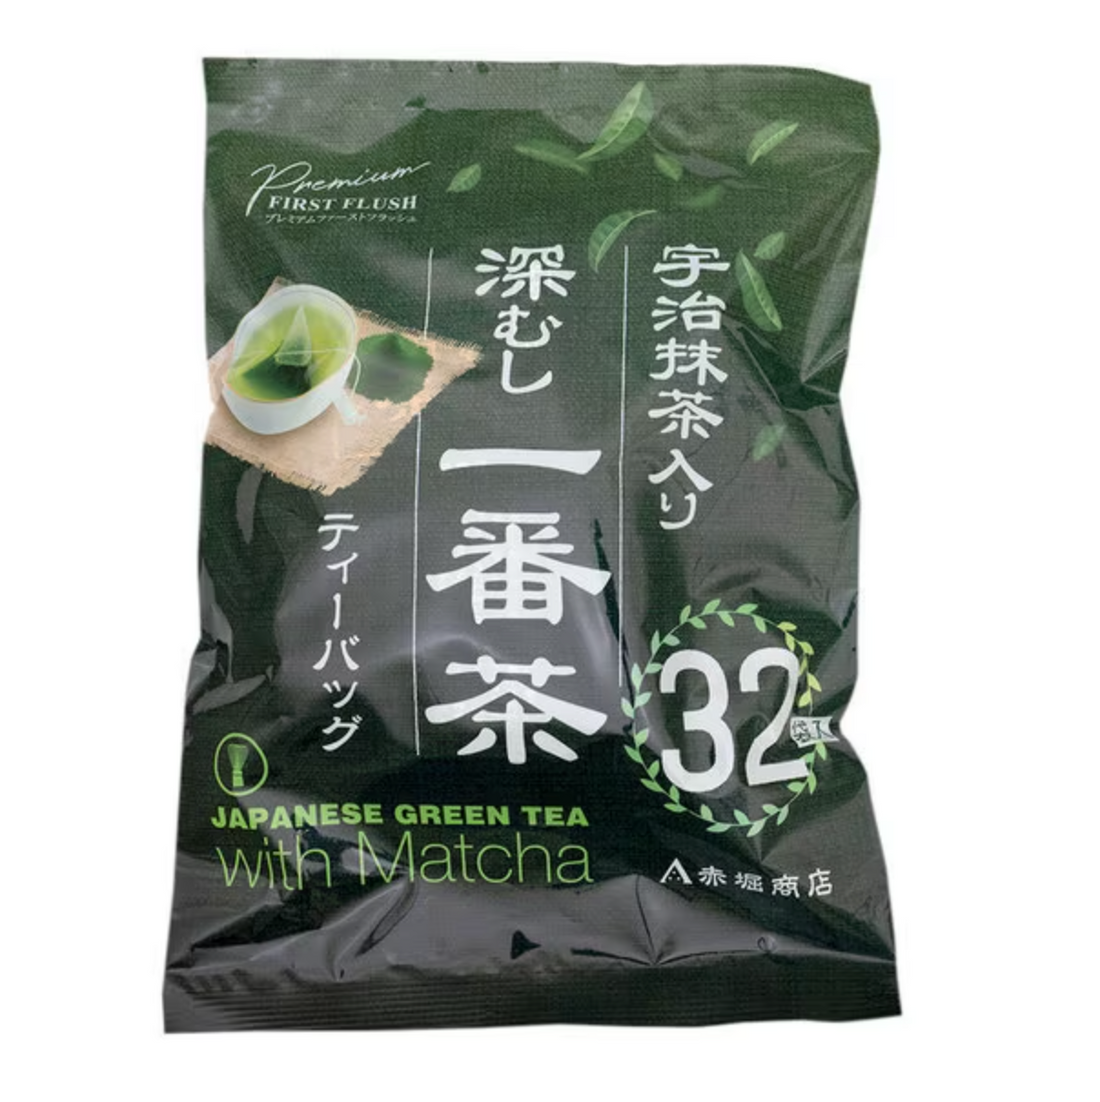 Akahori Shoten Uji Matcha Fukamushi Ichibancha Tea Bags 2g x 32 bags